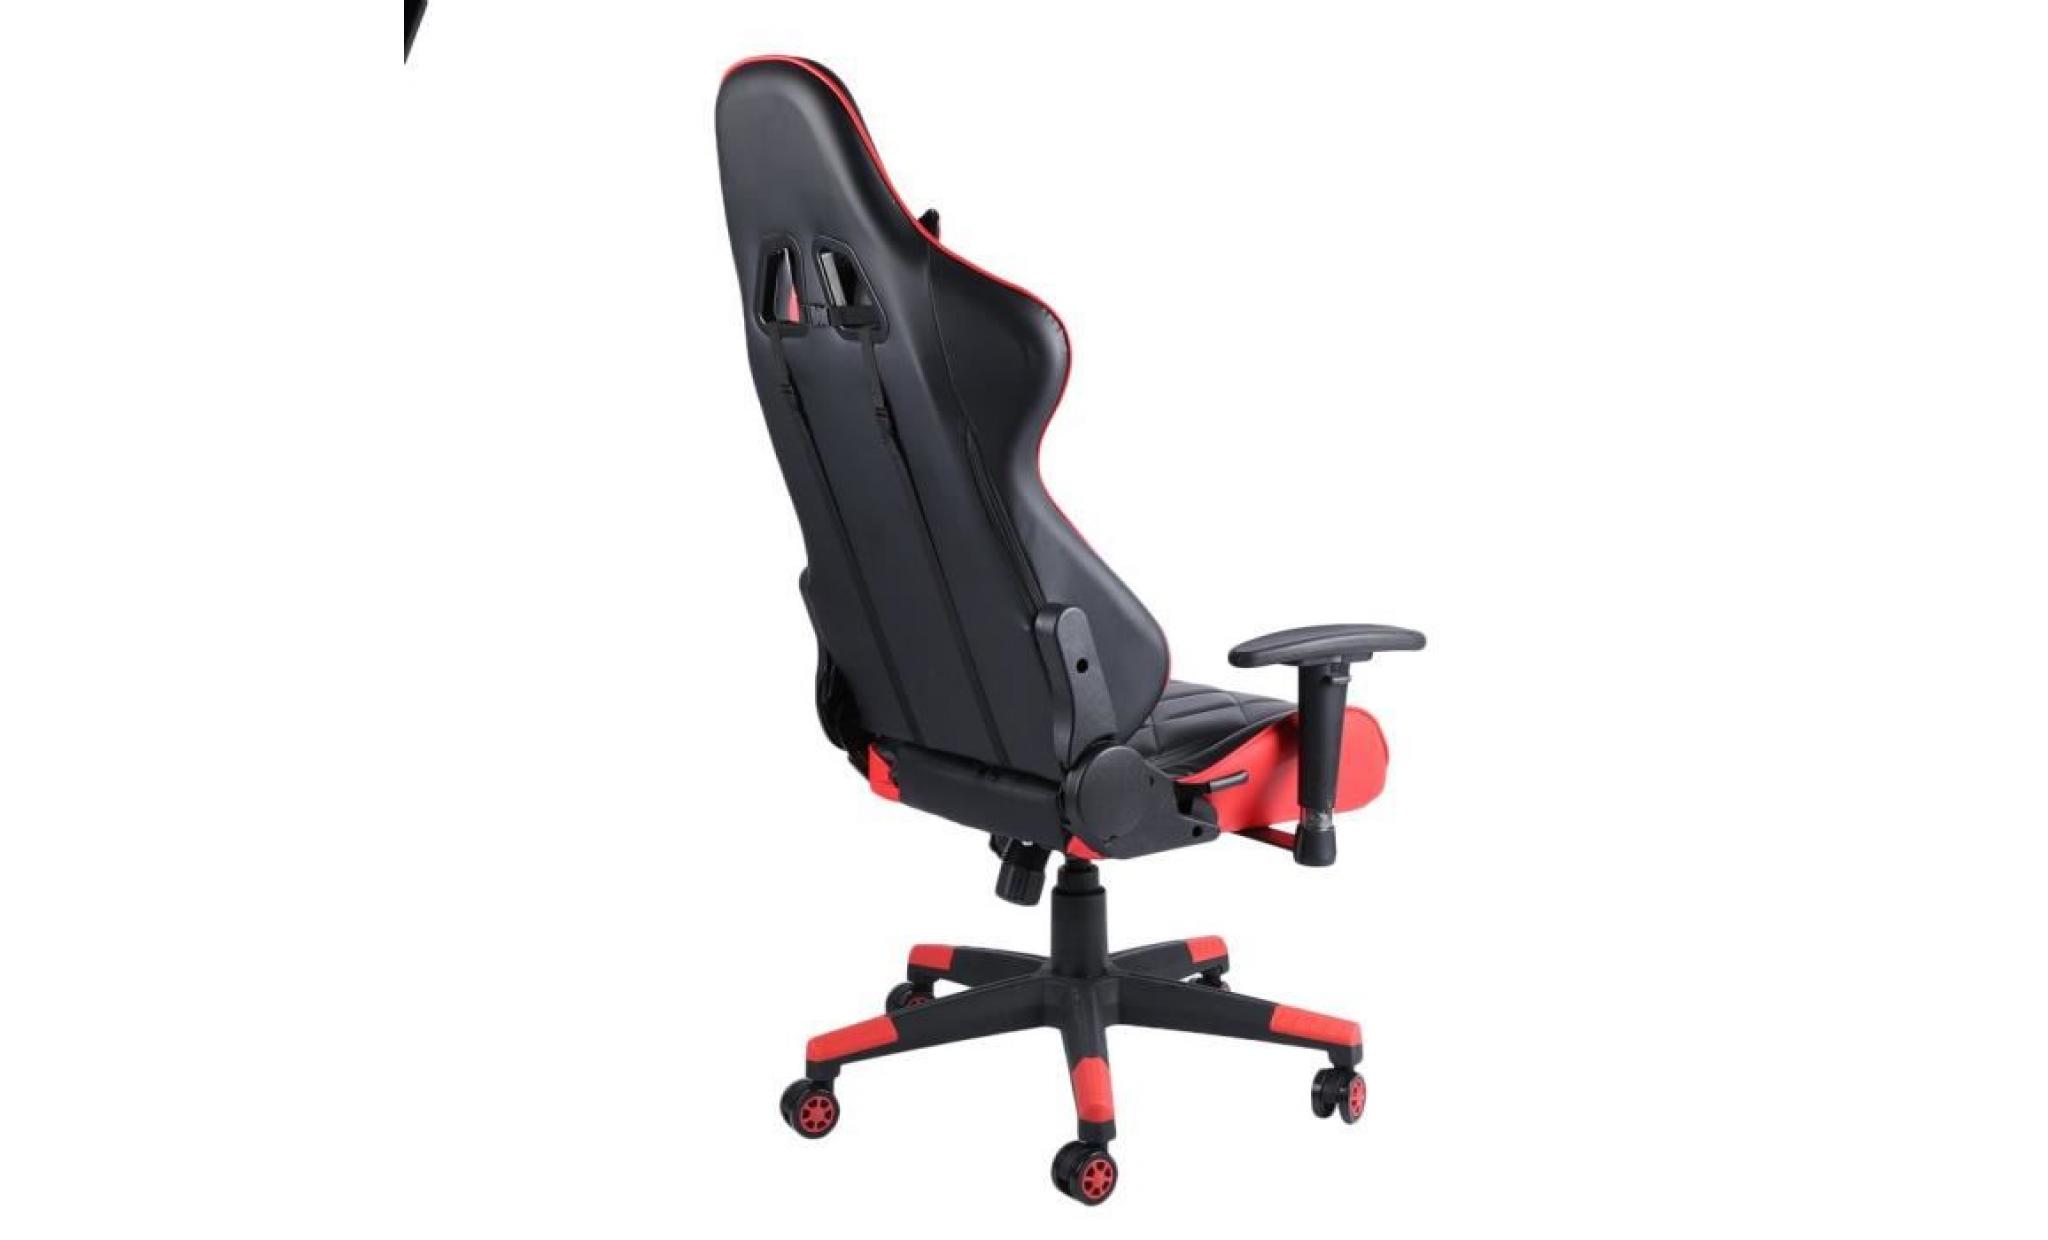 2018 pro 360° rotation siège gaming fauteuil gamer chaise de jeu réglable avec repose pied roues rouge pas cher